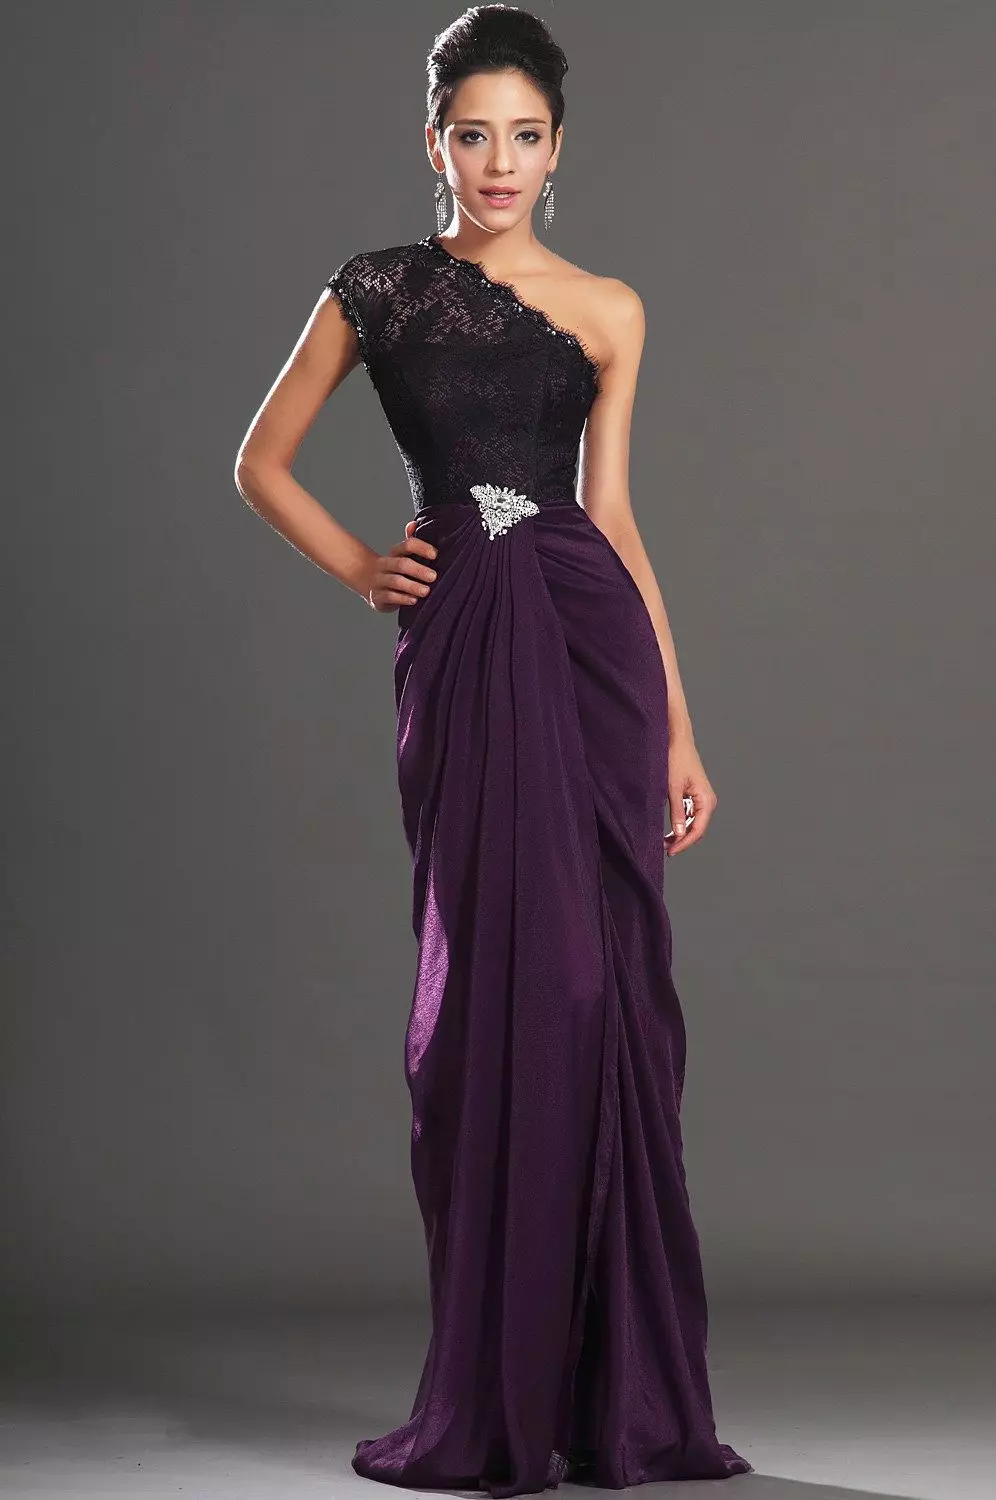 Violet evening dress on one shoulder